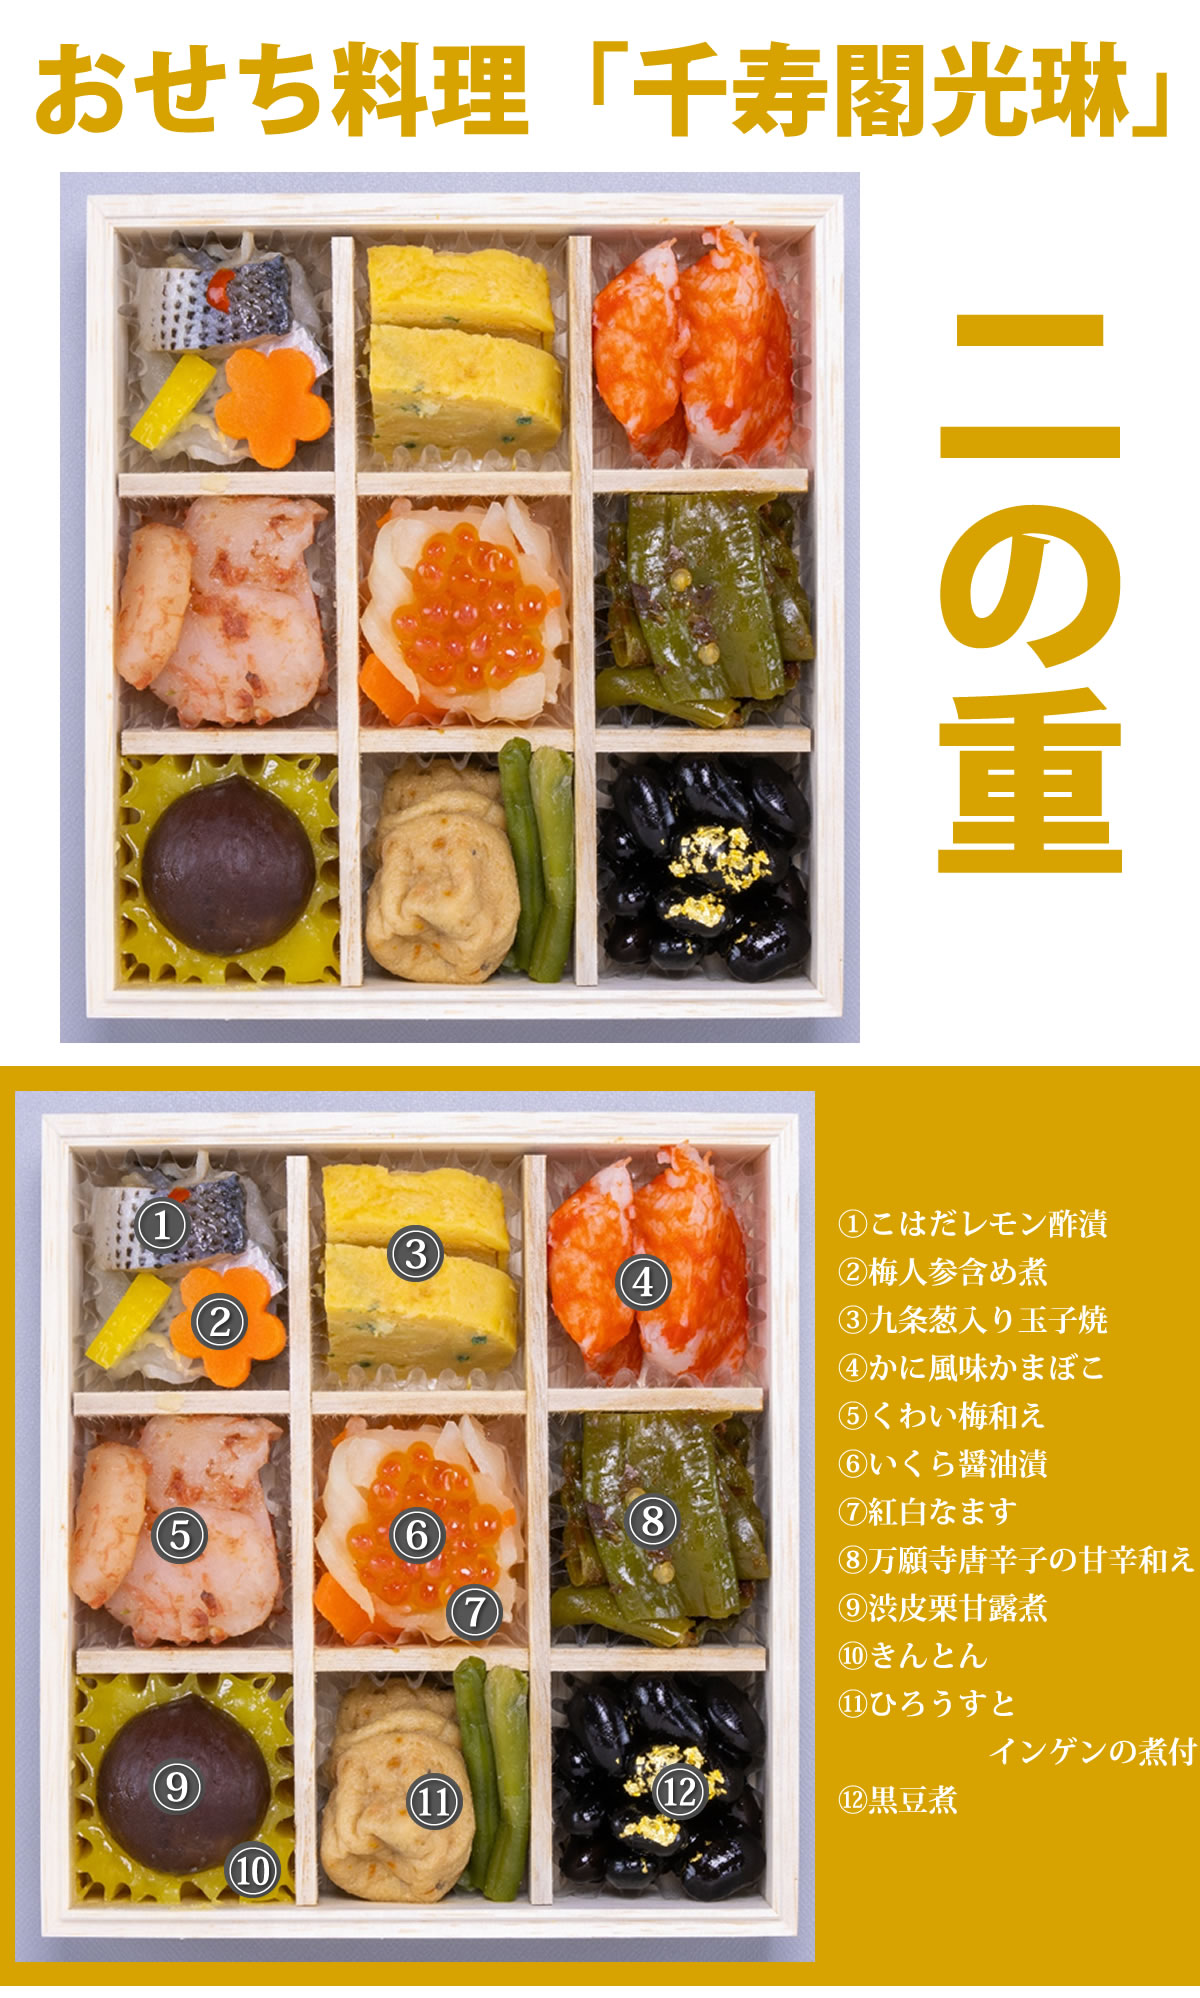 京都しょうざん和風おせち料理「千寿閣光琳」三段重 6.0寸2人前41品入 和風 洋風 中華 数量限定